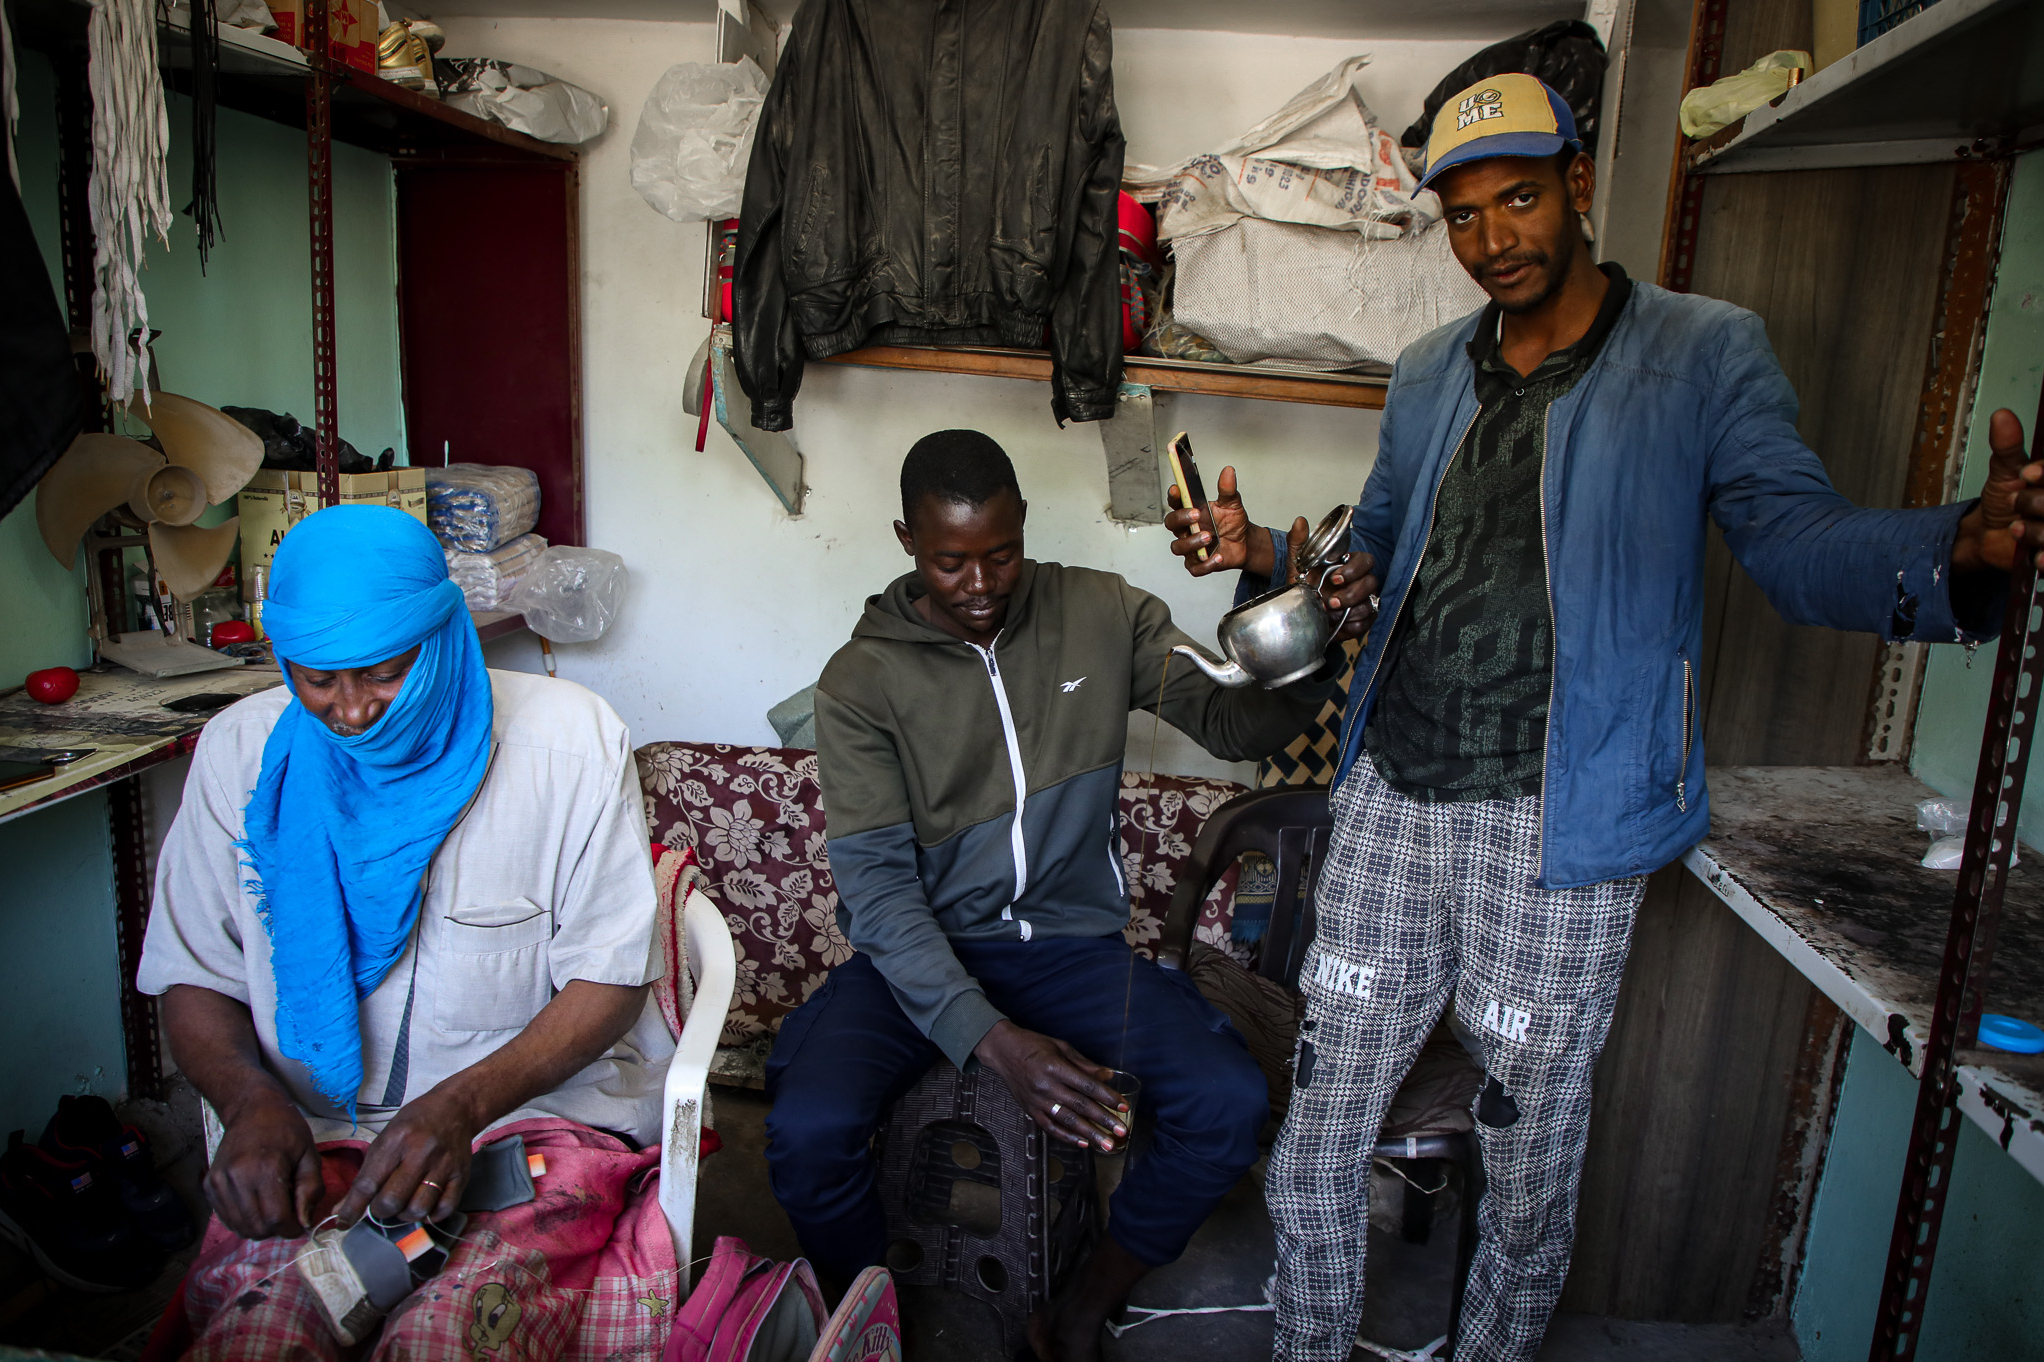 Drei Arbeitsmigranten in Tripolis Libyen an einem Verkaufstand. Ein Mann mit leuchtend blauem Turban arbeitet an einem Schuh, einer bereitet Tee zu und ein anderer schaut in die Kamera mit einem Handy in der Hand.